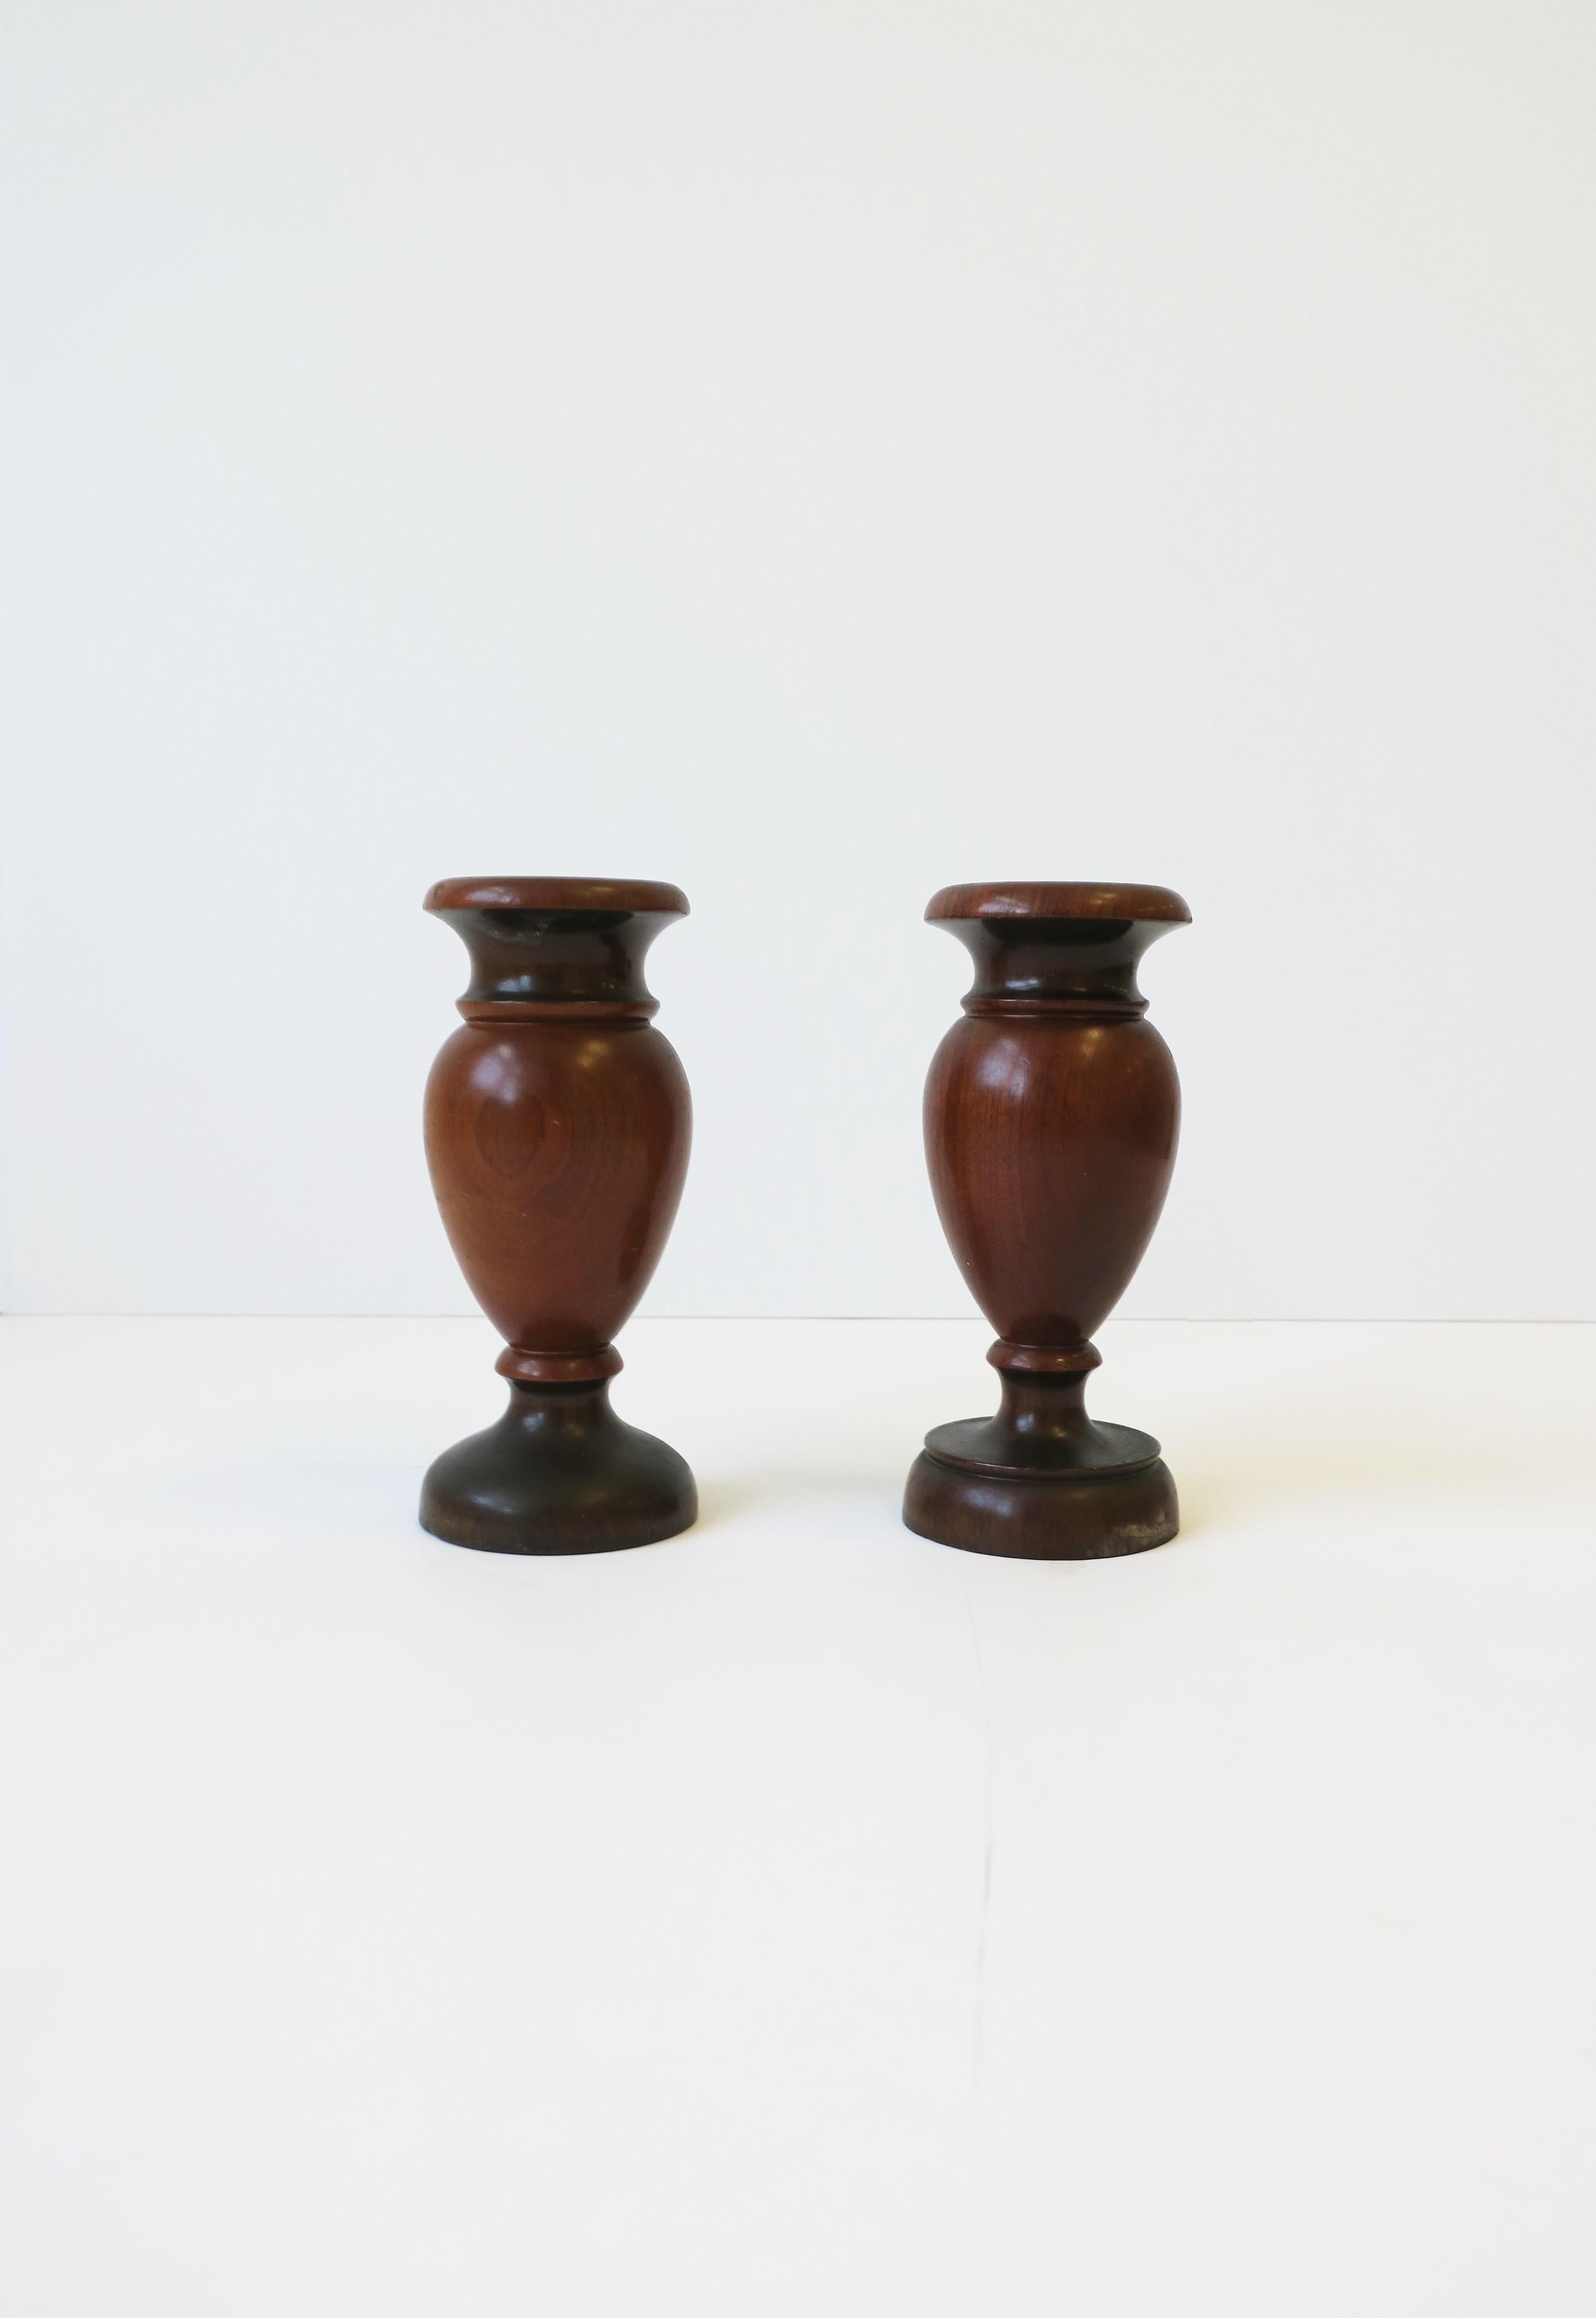 Une belle paire de vases en noyer tourné, datant de la fin du 19e siècle, avec une lèvre en forme de collerette sur le col, reposant sur une base à pied tourné, Angleterre. Dimensions : 2.63